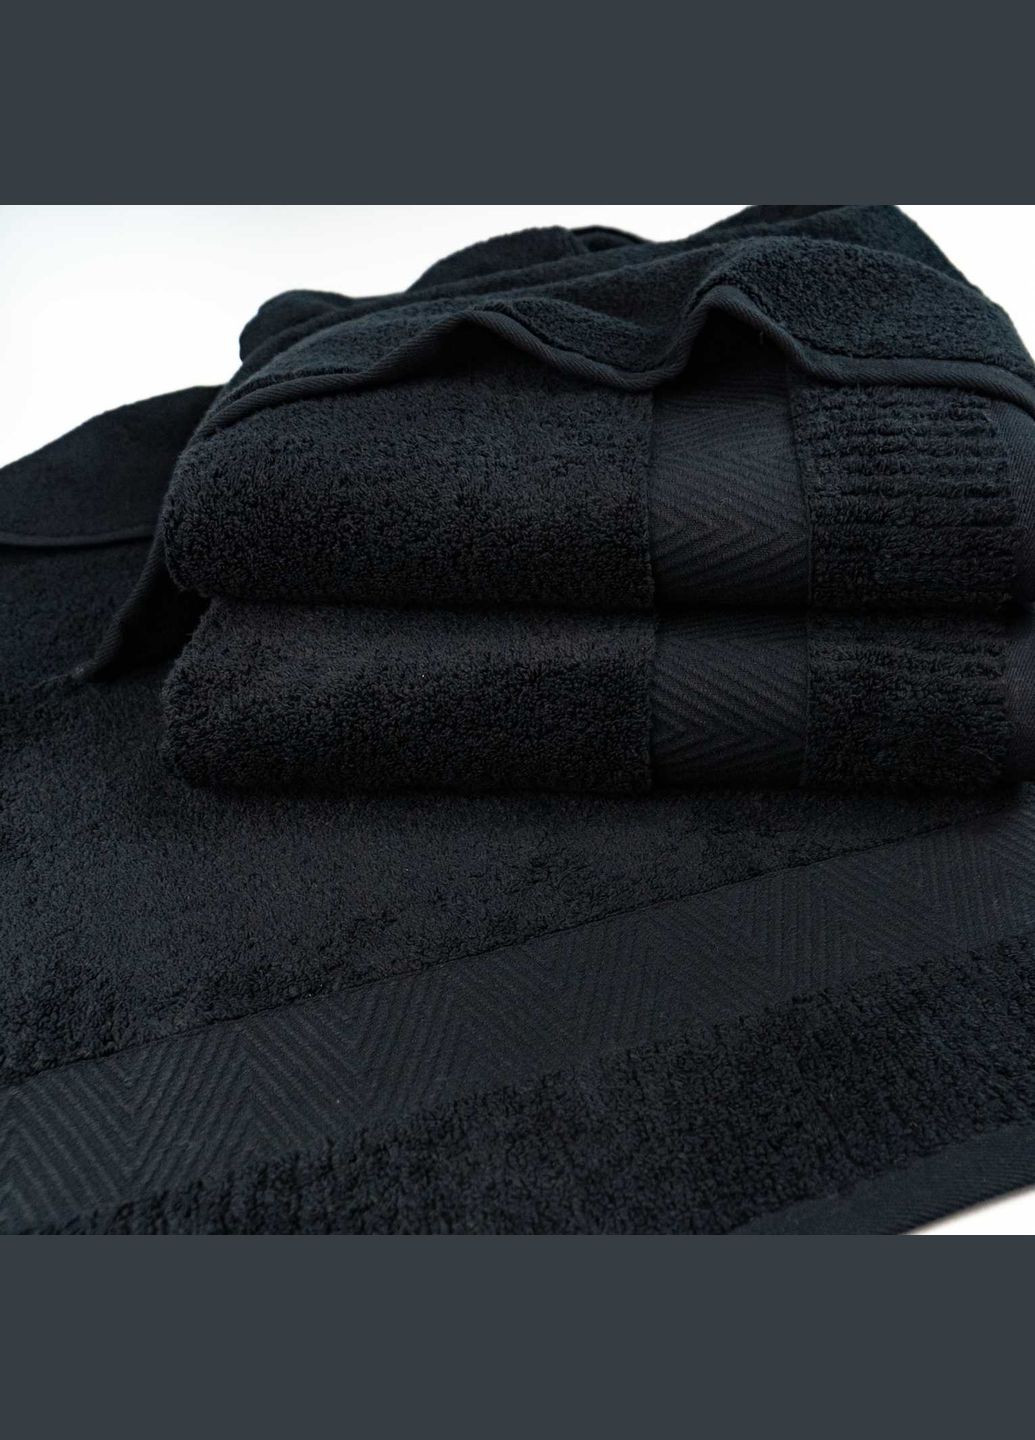 GM Textile банний махровий рушник 70x140см преміум якості зеро твіст бордюр 550г/м2 (чорний) чорний виробництво -